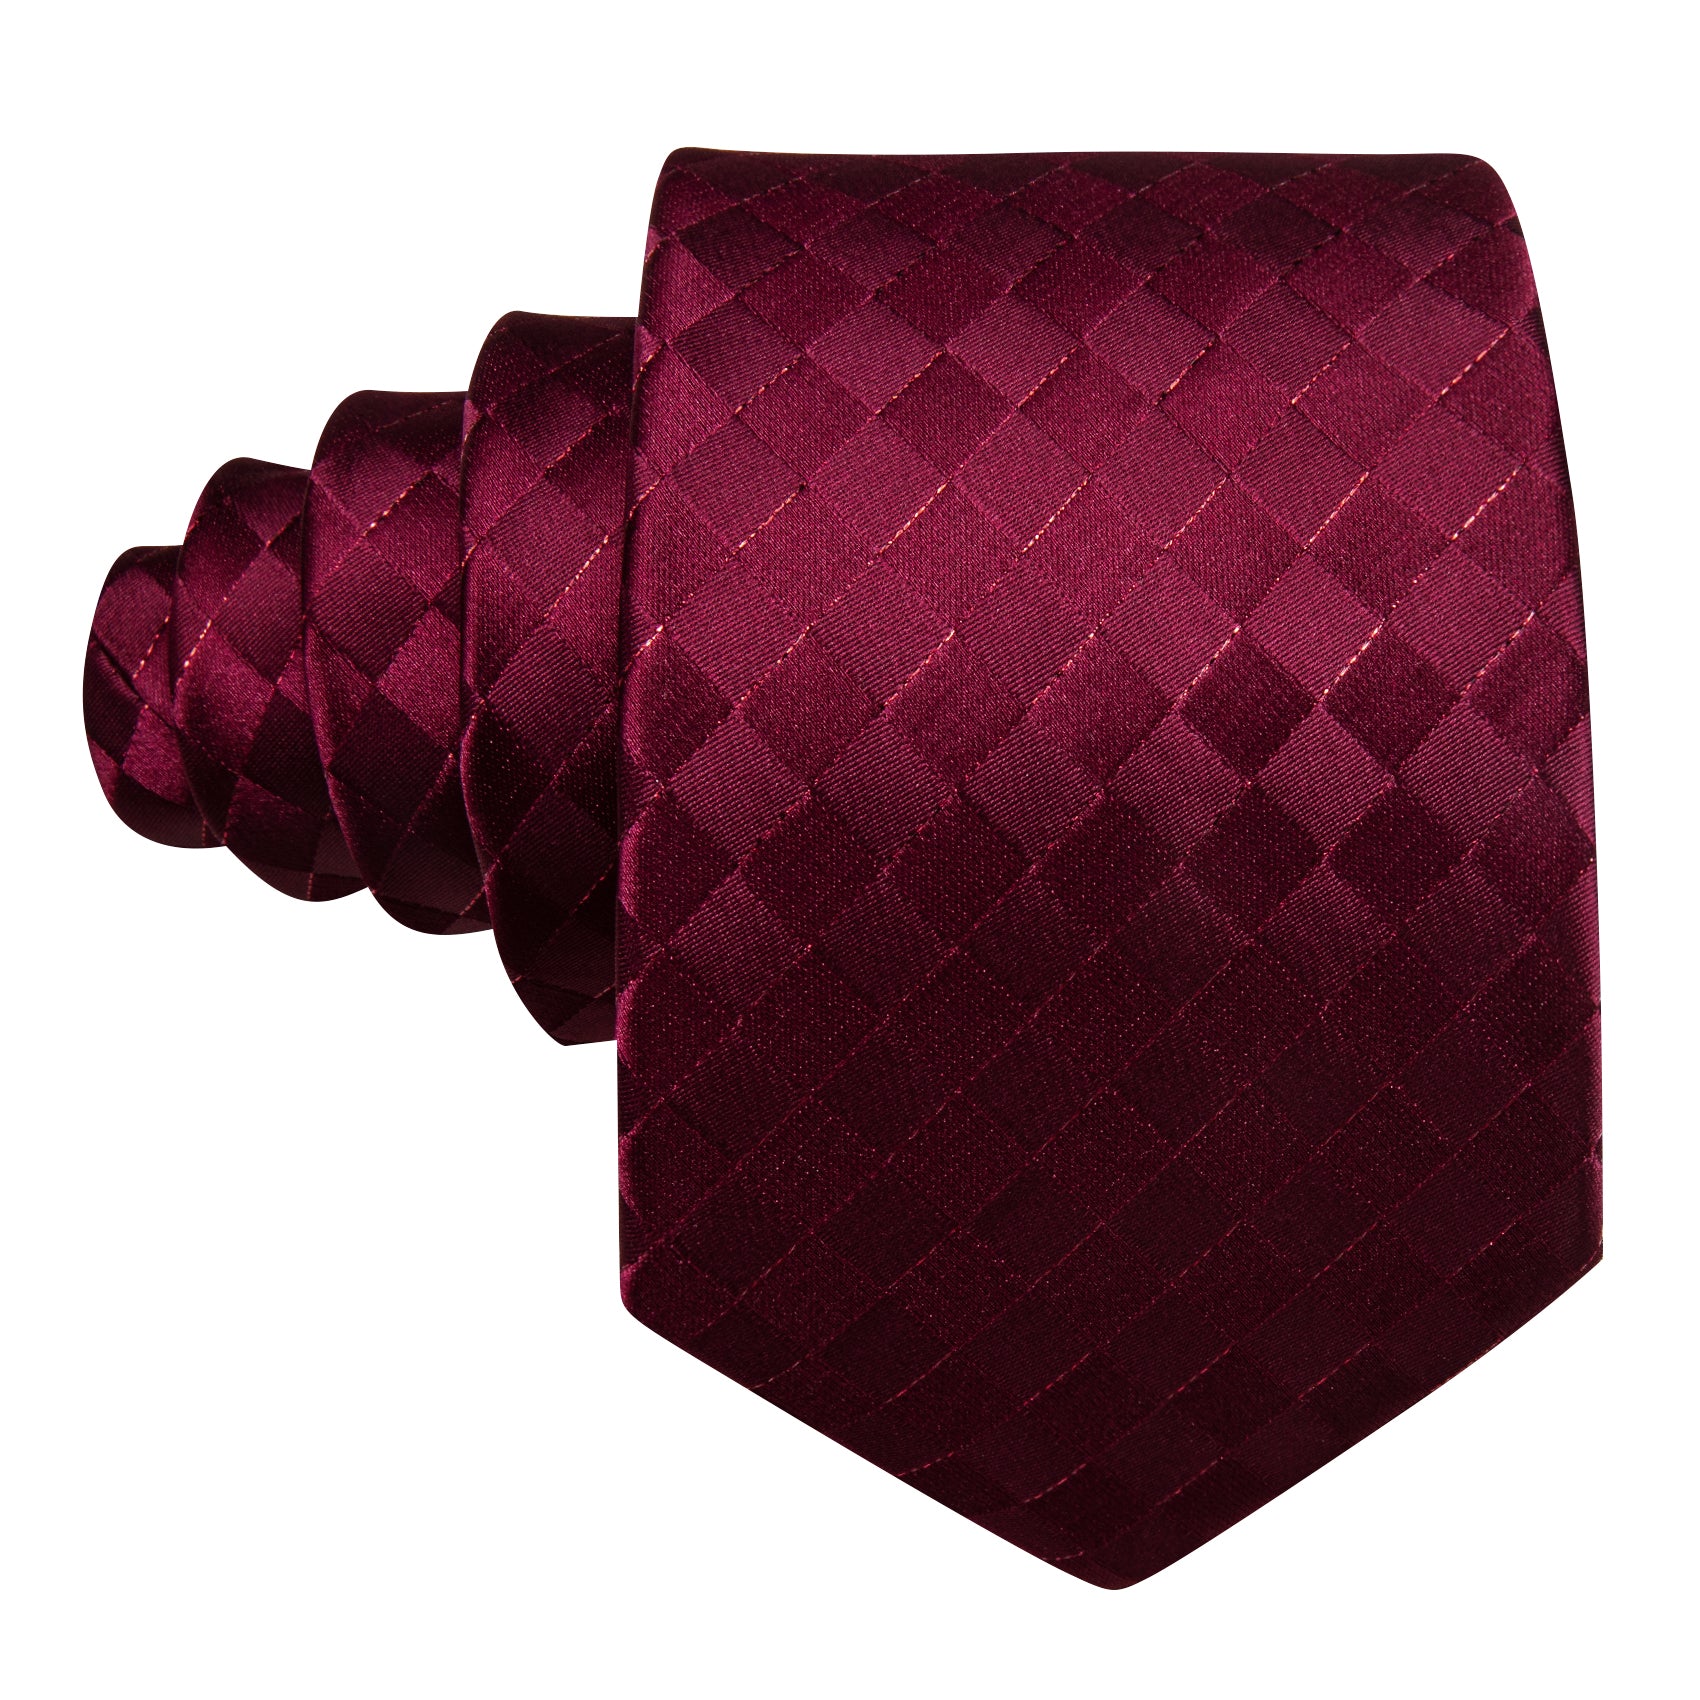 Burgundy Plaid Silk Tie Handkerchief Cufflinks Set